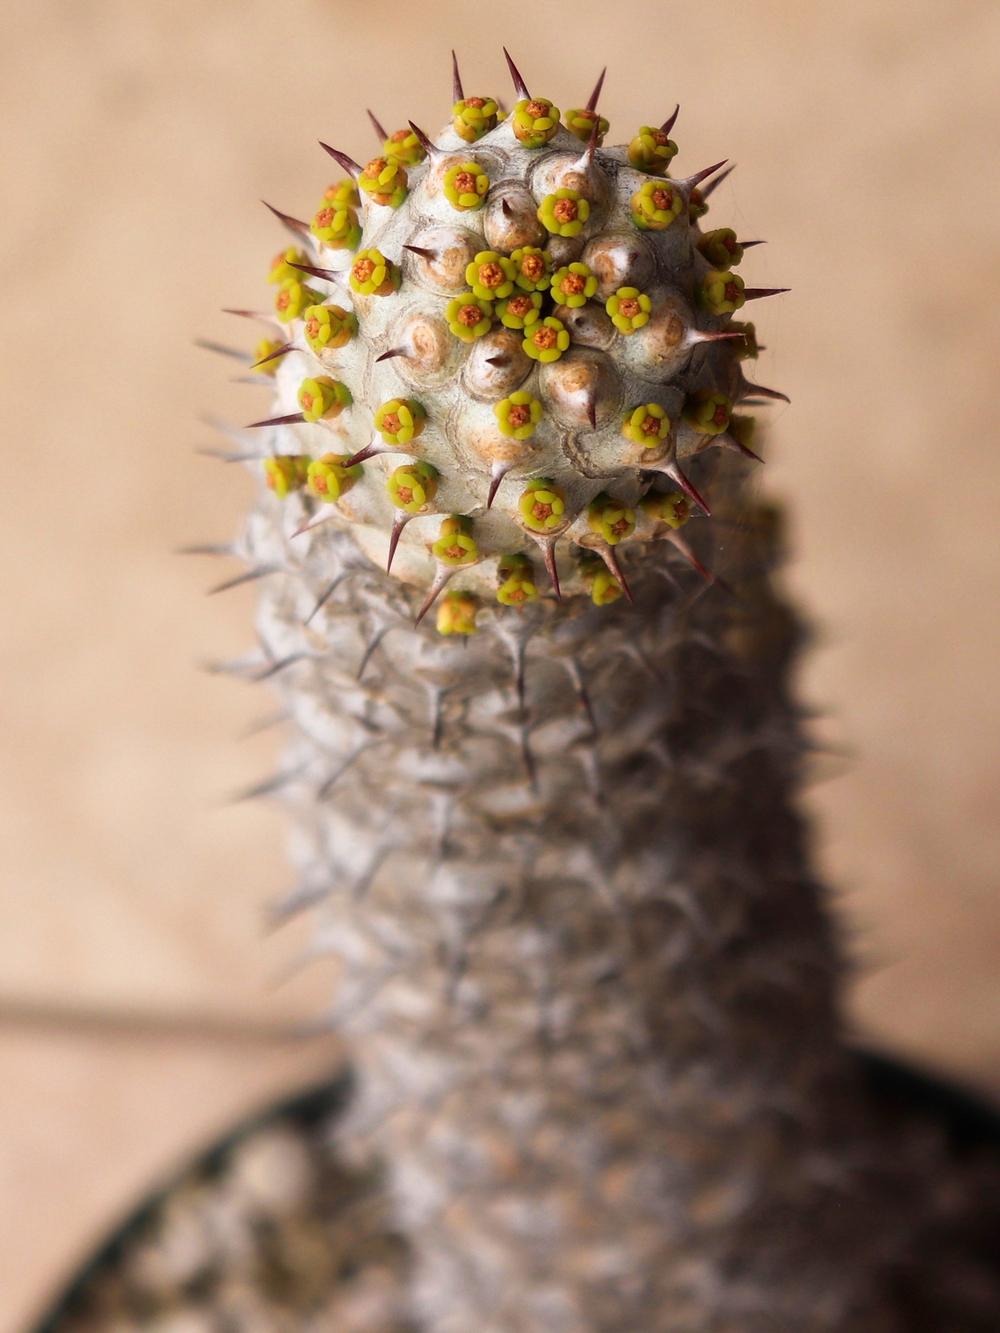 Photo of Euphorbia (Euphorbia venenifica) uploaded by Baja_Costero